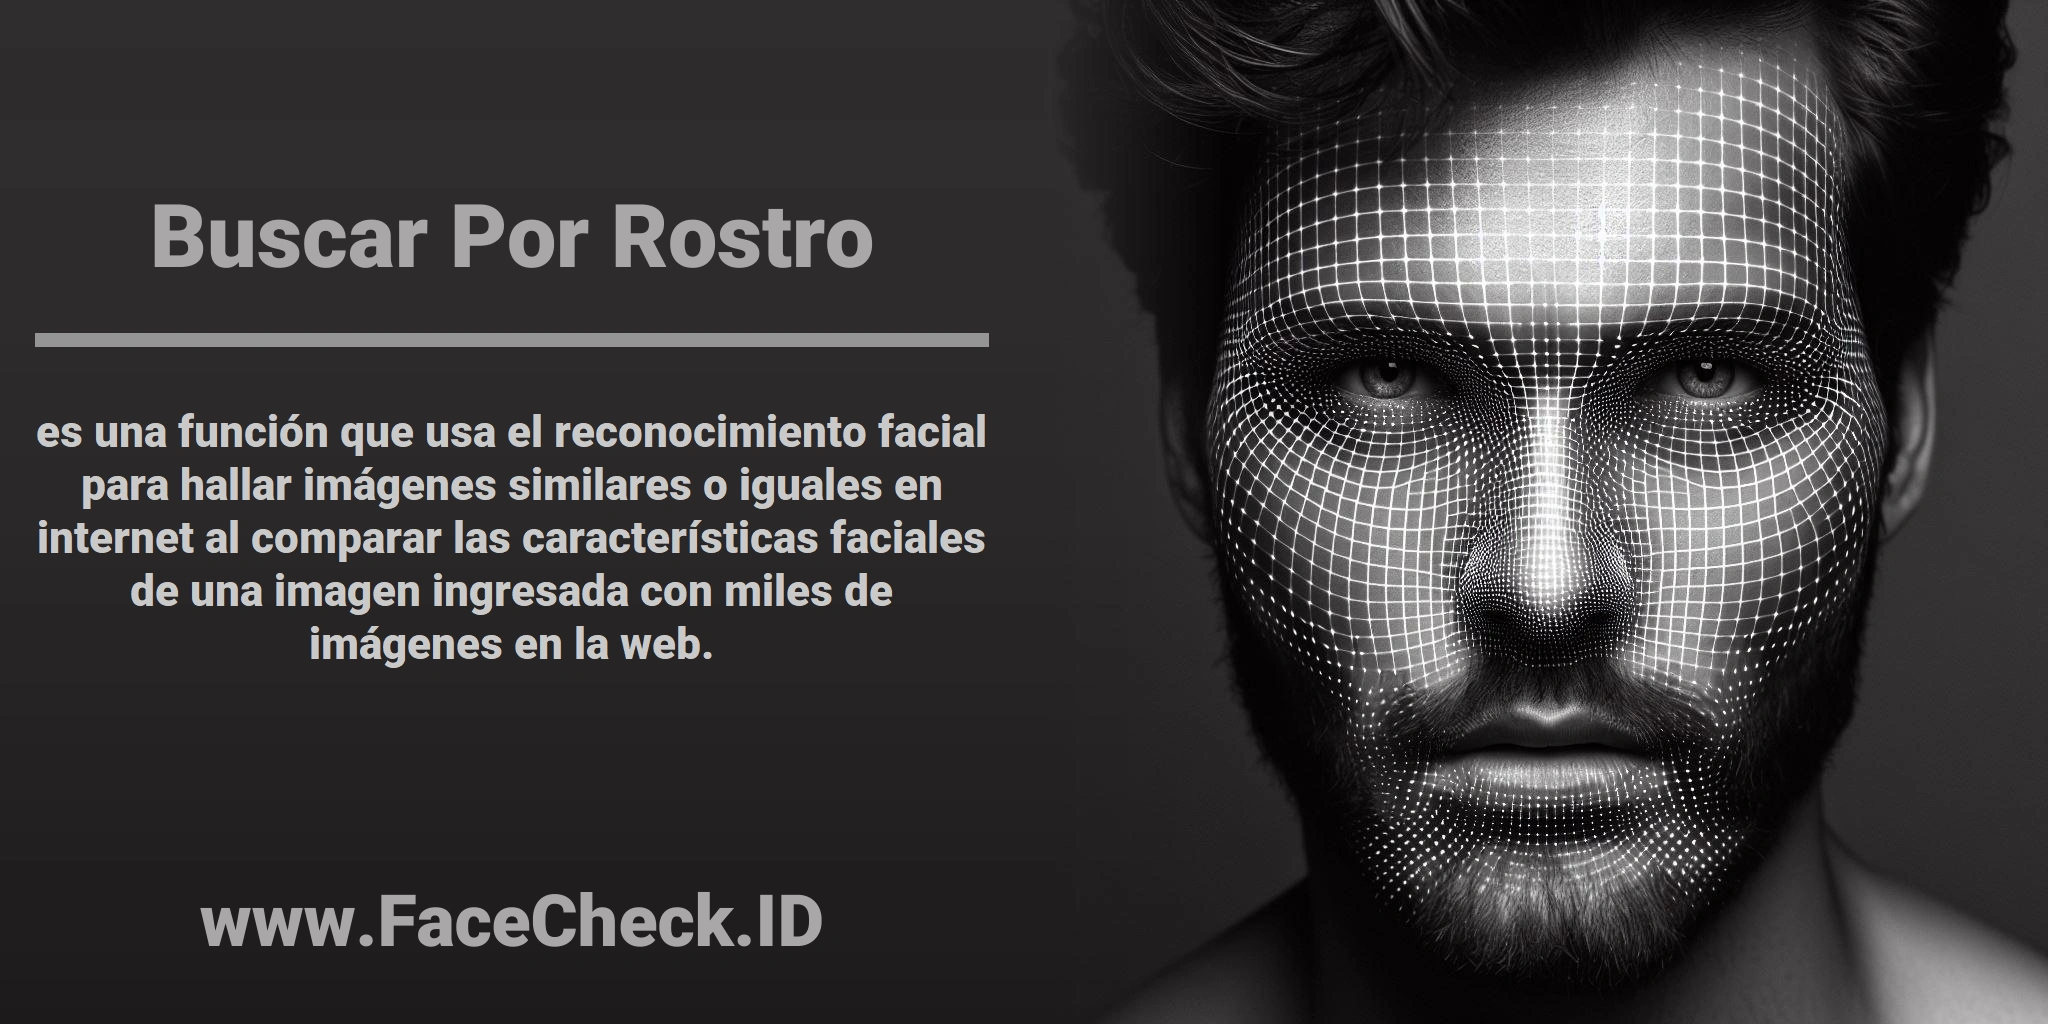 <b>Buscar Por Rostro</b> es una función que usa el reconocimiento facial para hallar imágenes similares o iguales en internet al comparar las características faciales de una imagen ingresada con miles de imágenes en la web.